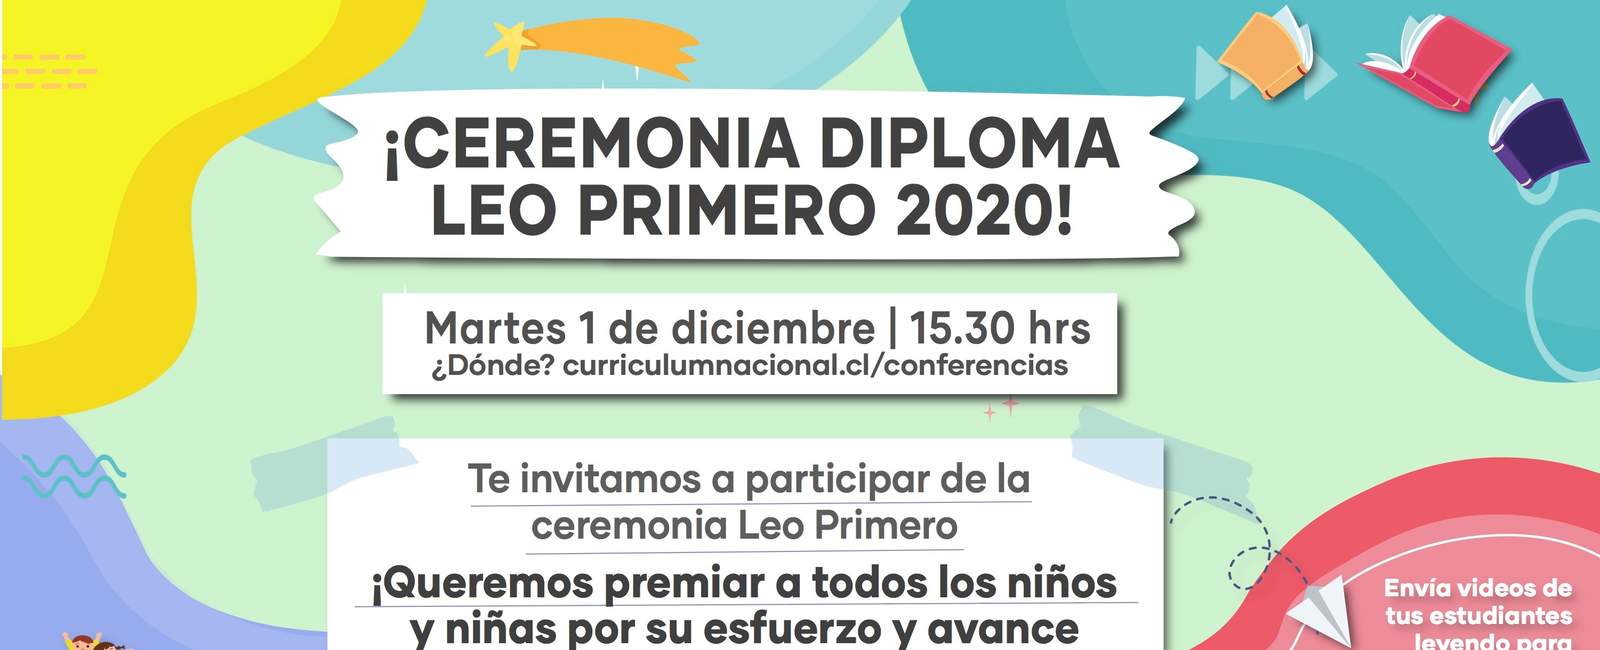 Ceremonia de entrega del Diploma Leo Primero 2020